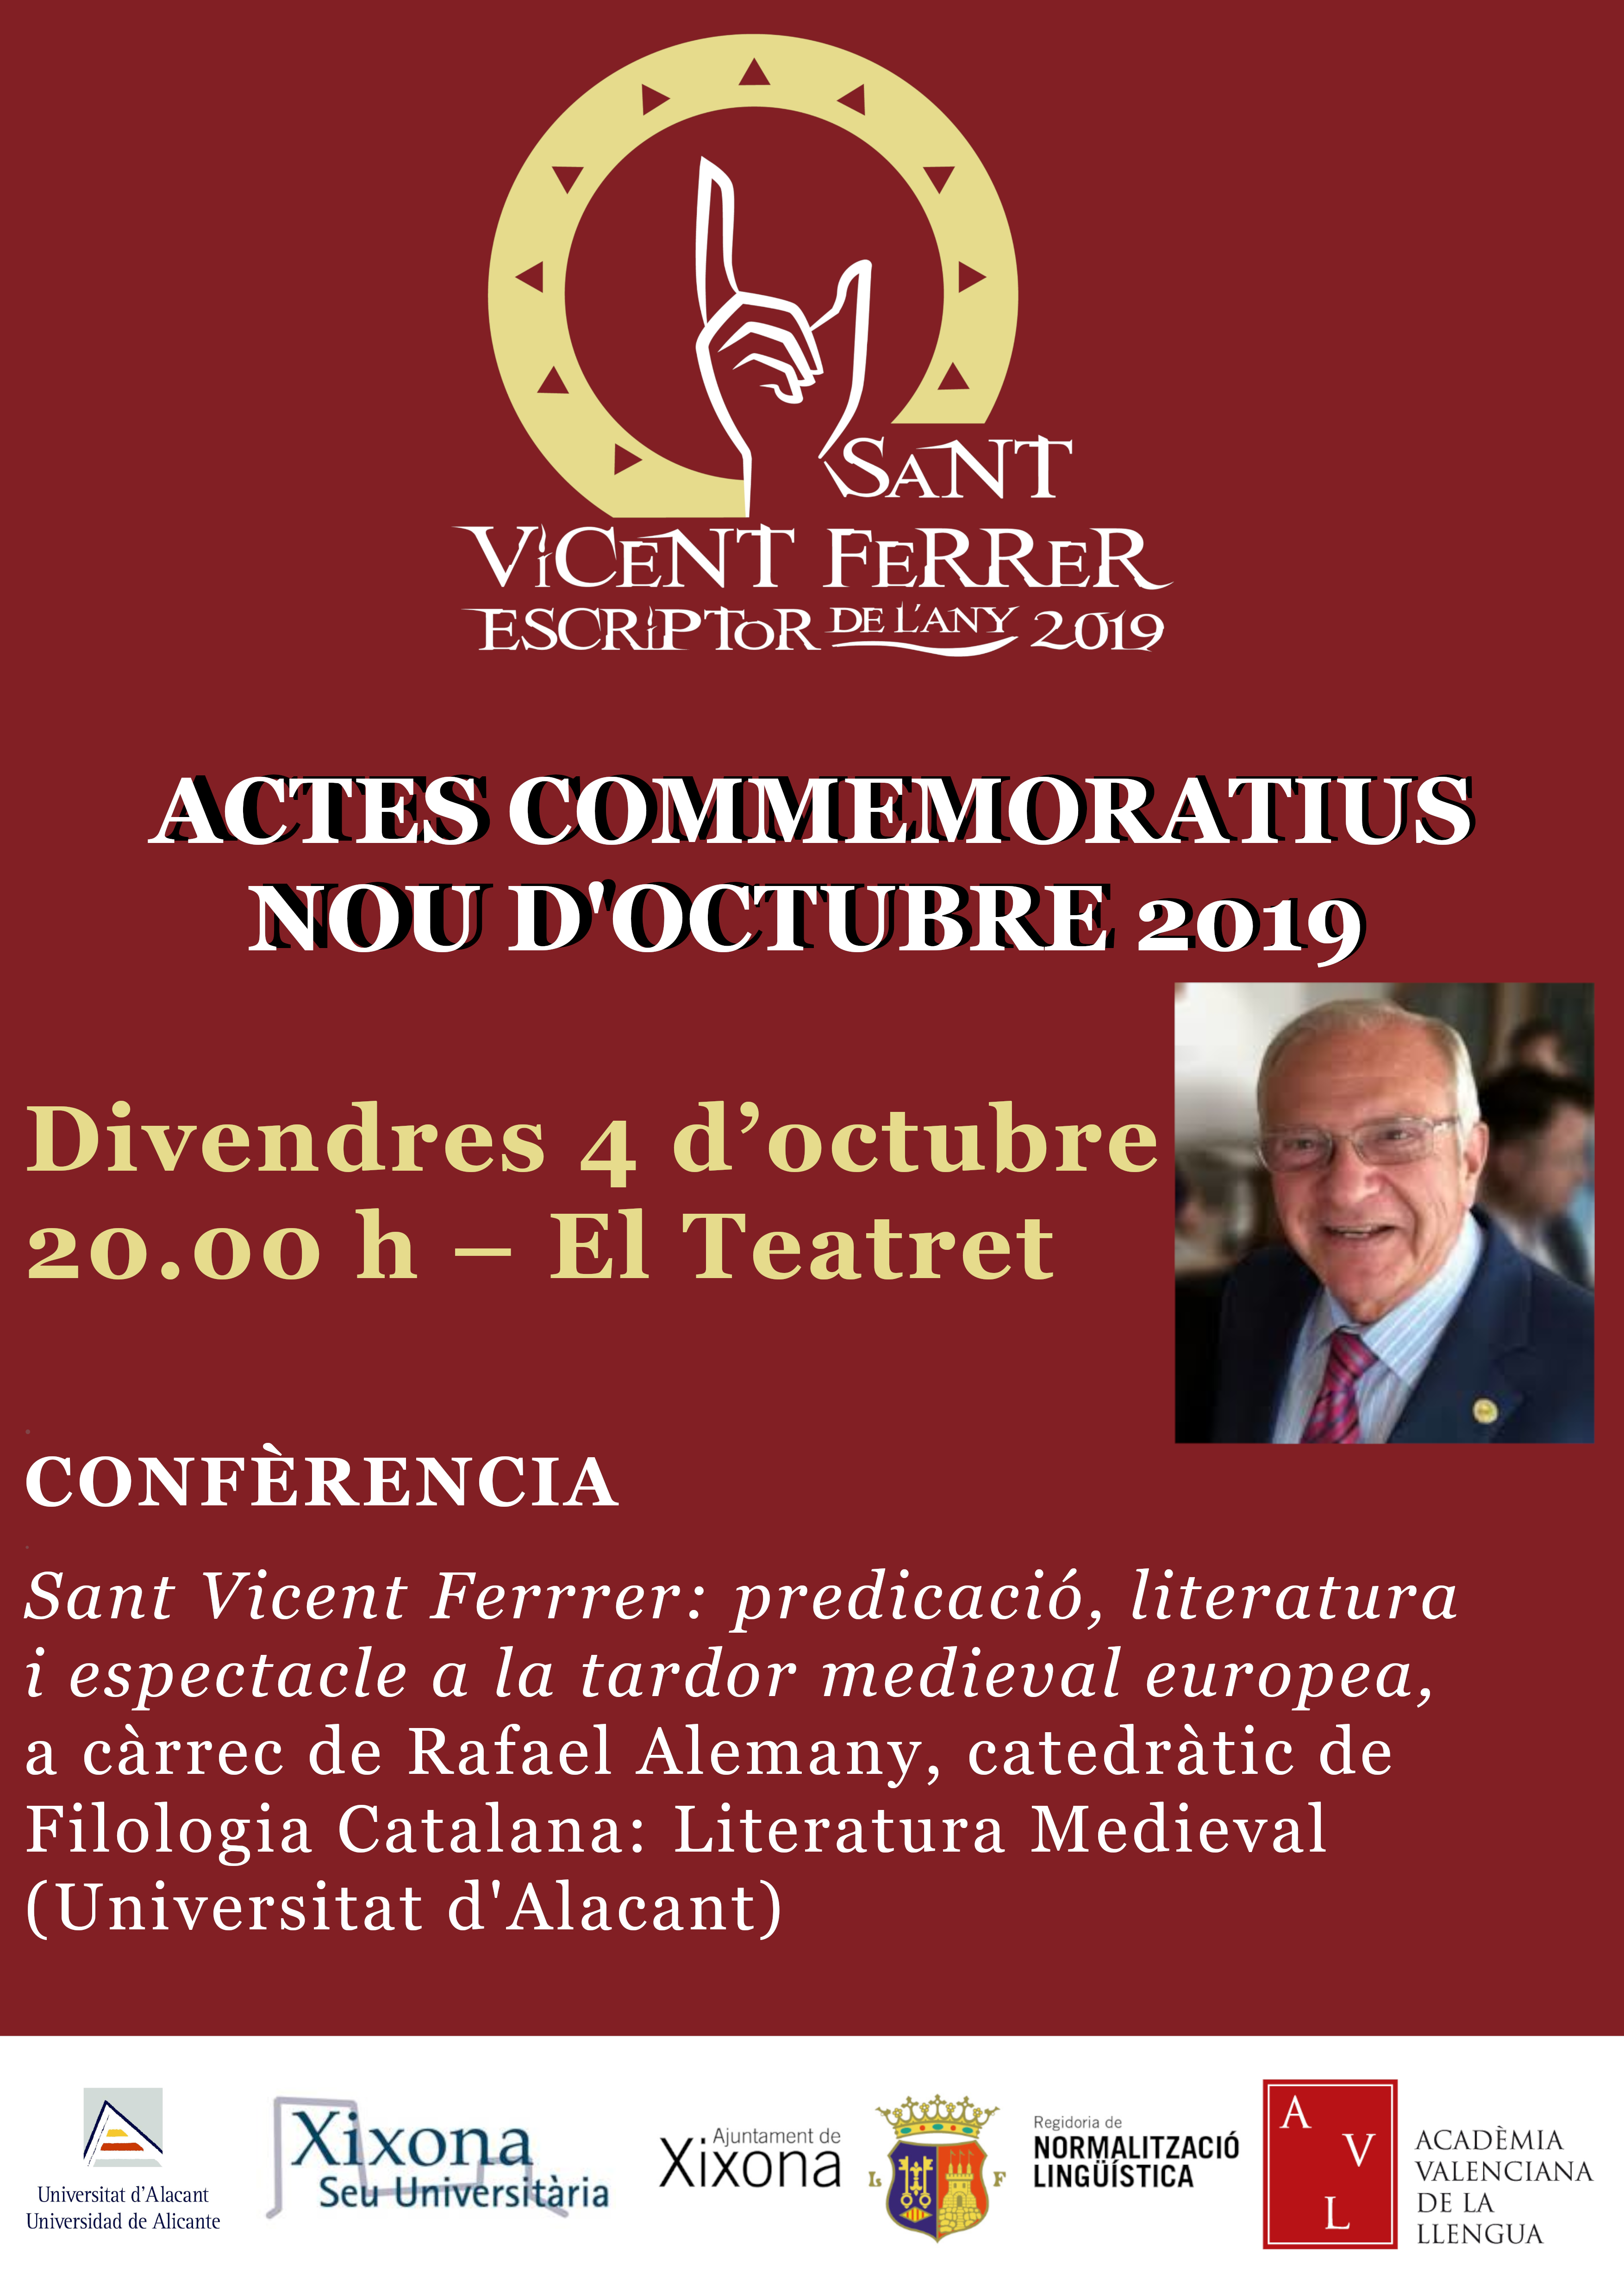 Conferència: "Sant Vicent Ferer: predicació, literatura i espectacle a la tardor medieval europea"